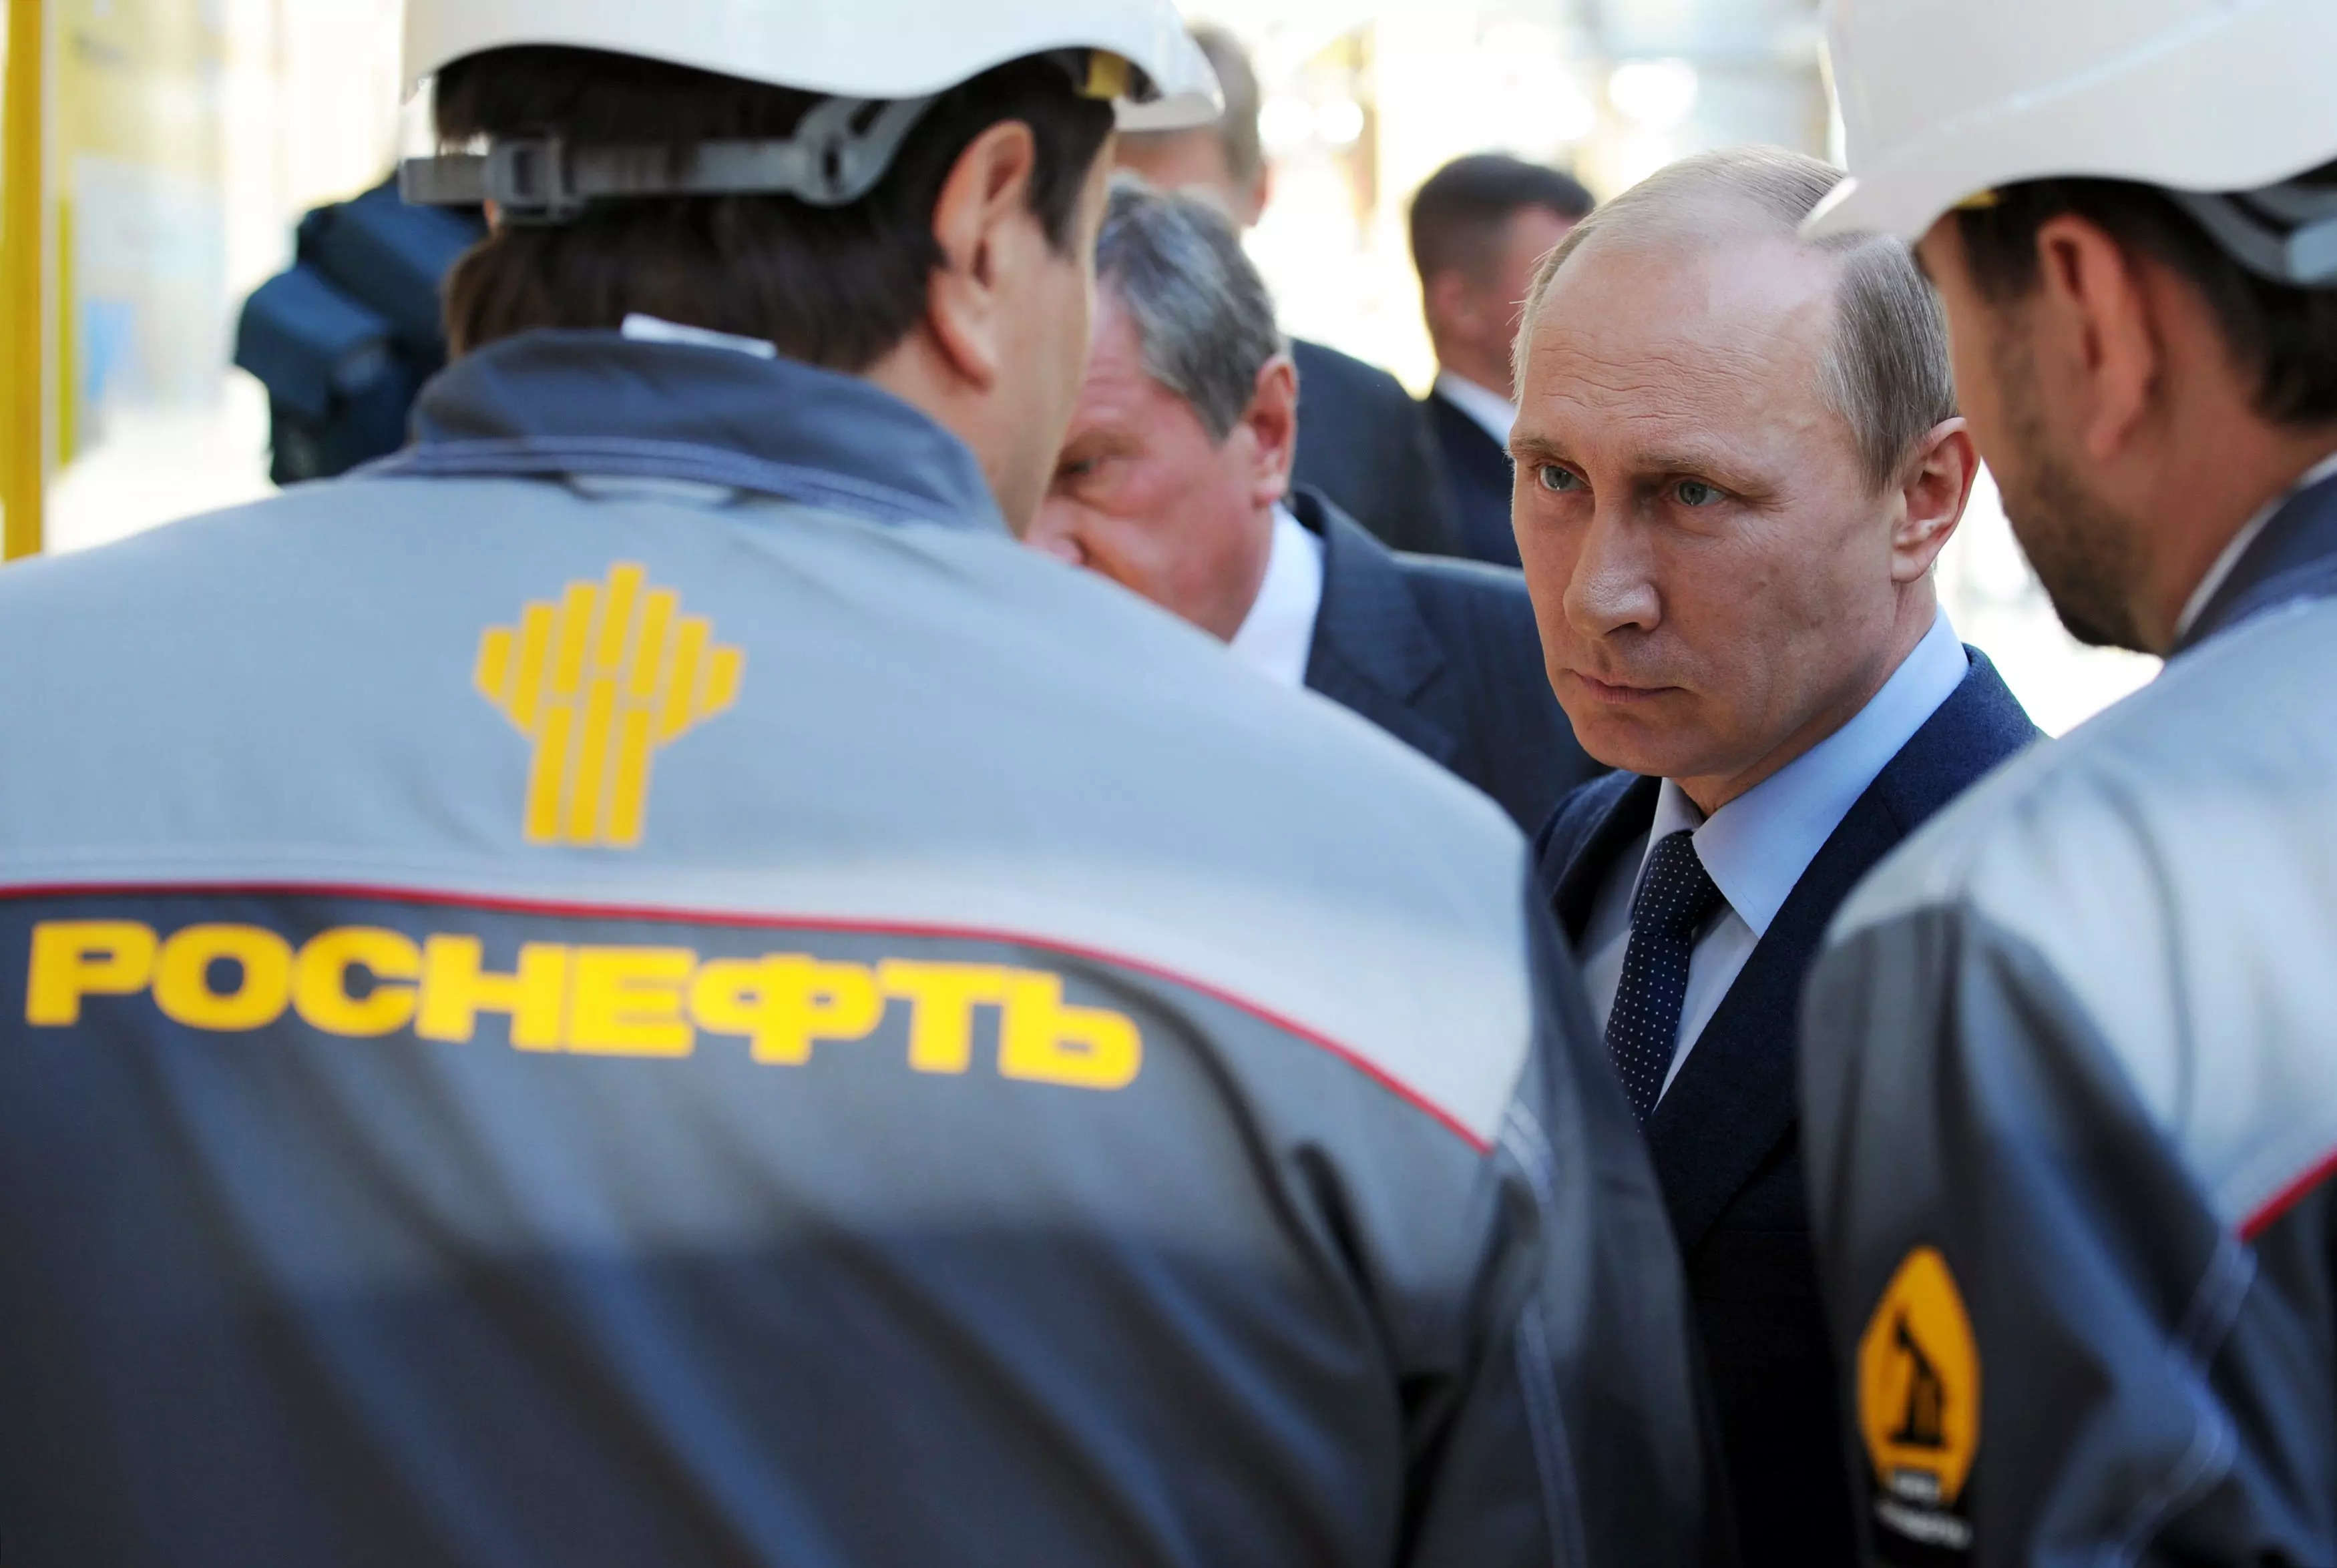 Russiske Rosneft betalte bare 1 dollar for store norske oljeselskaps viktigste eiendeler da krigen i Ukraina tvang det ut av landet: rapport